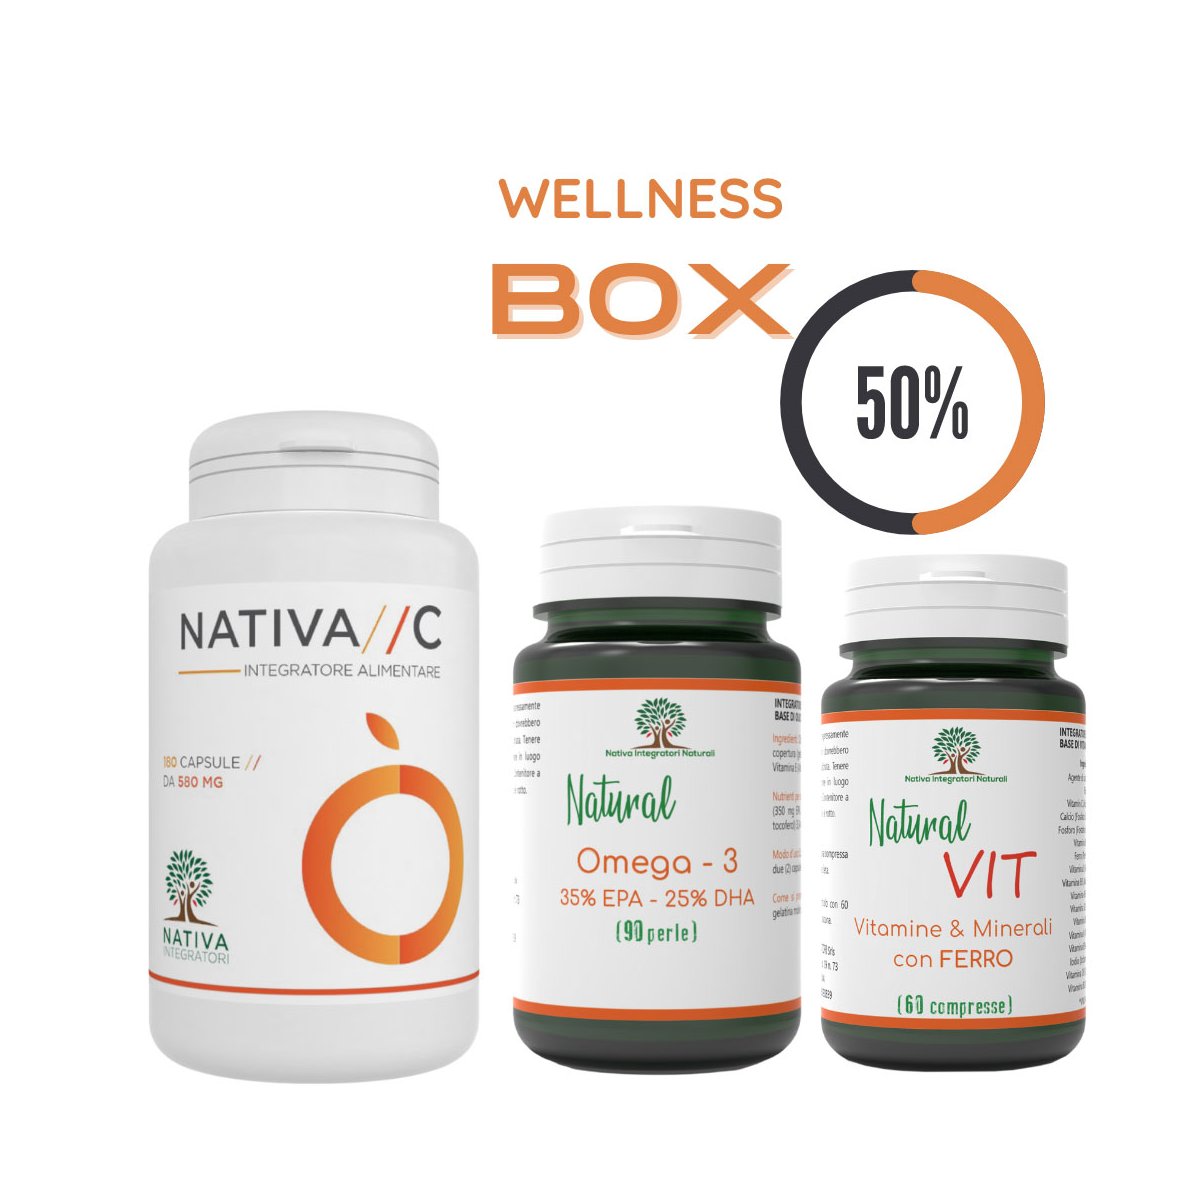 Wellness Box: Nativa C + Omega 3 + Natural Vit